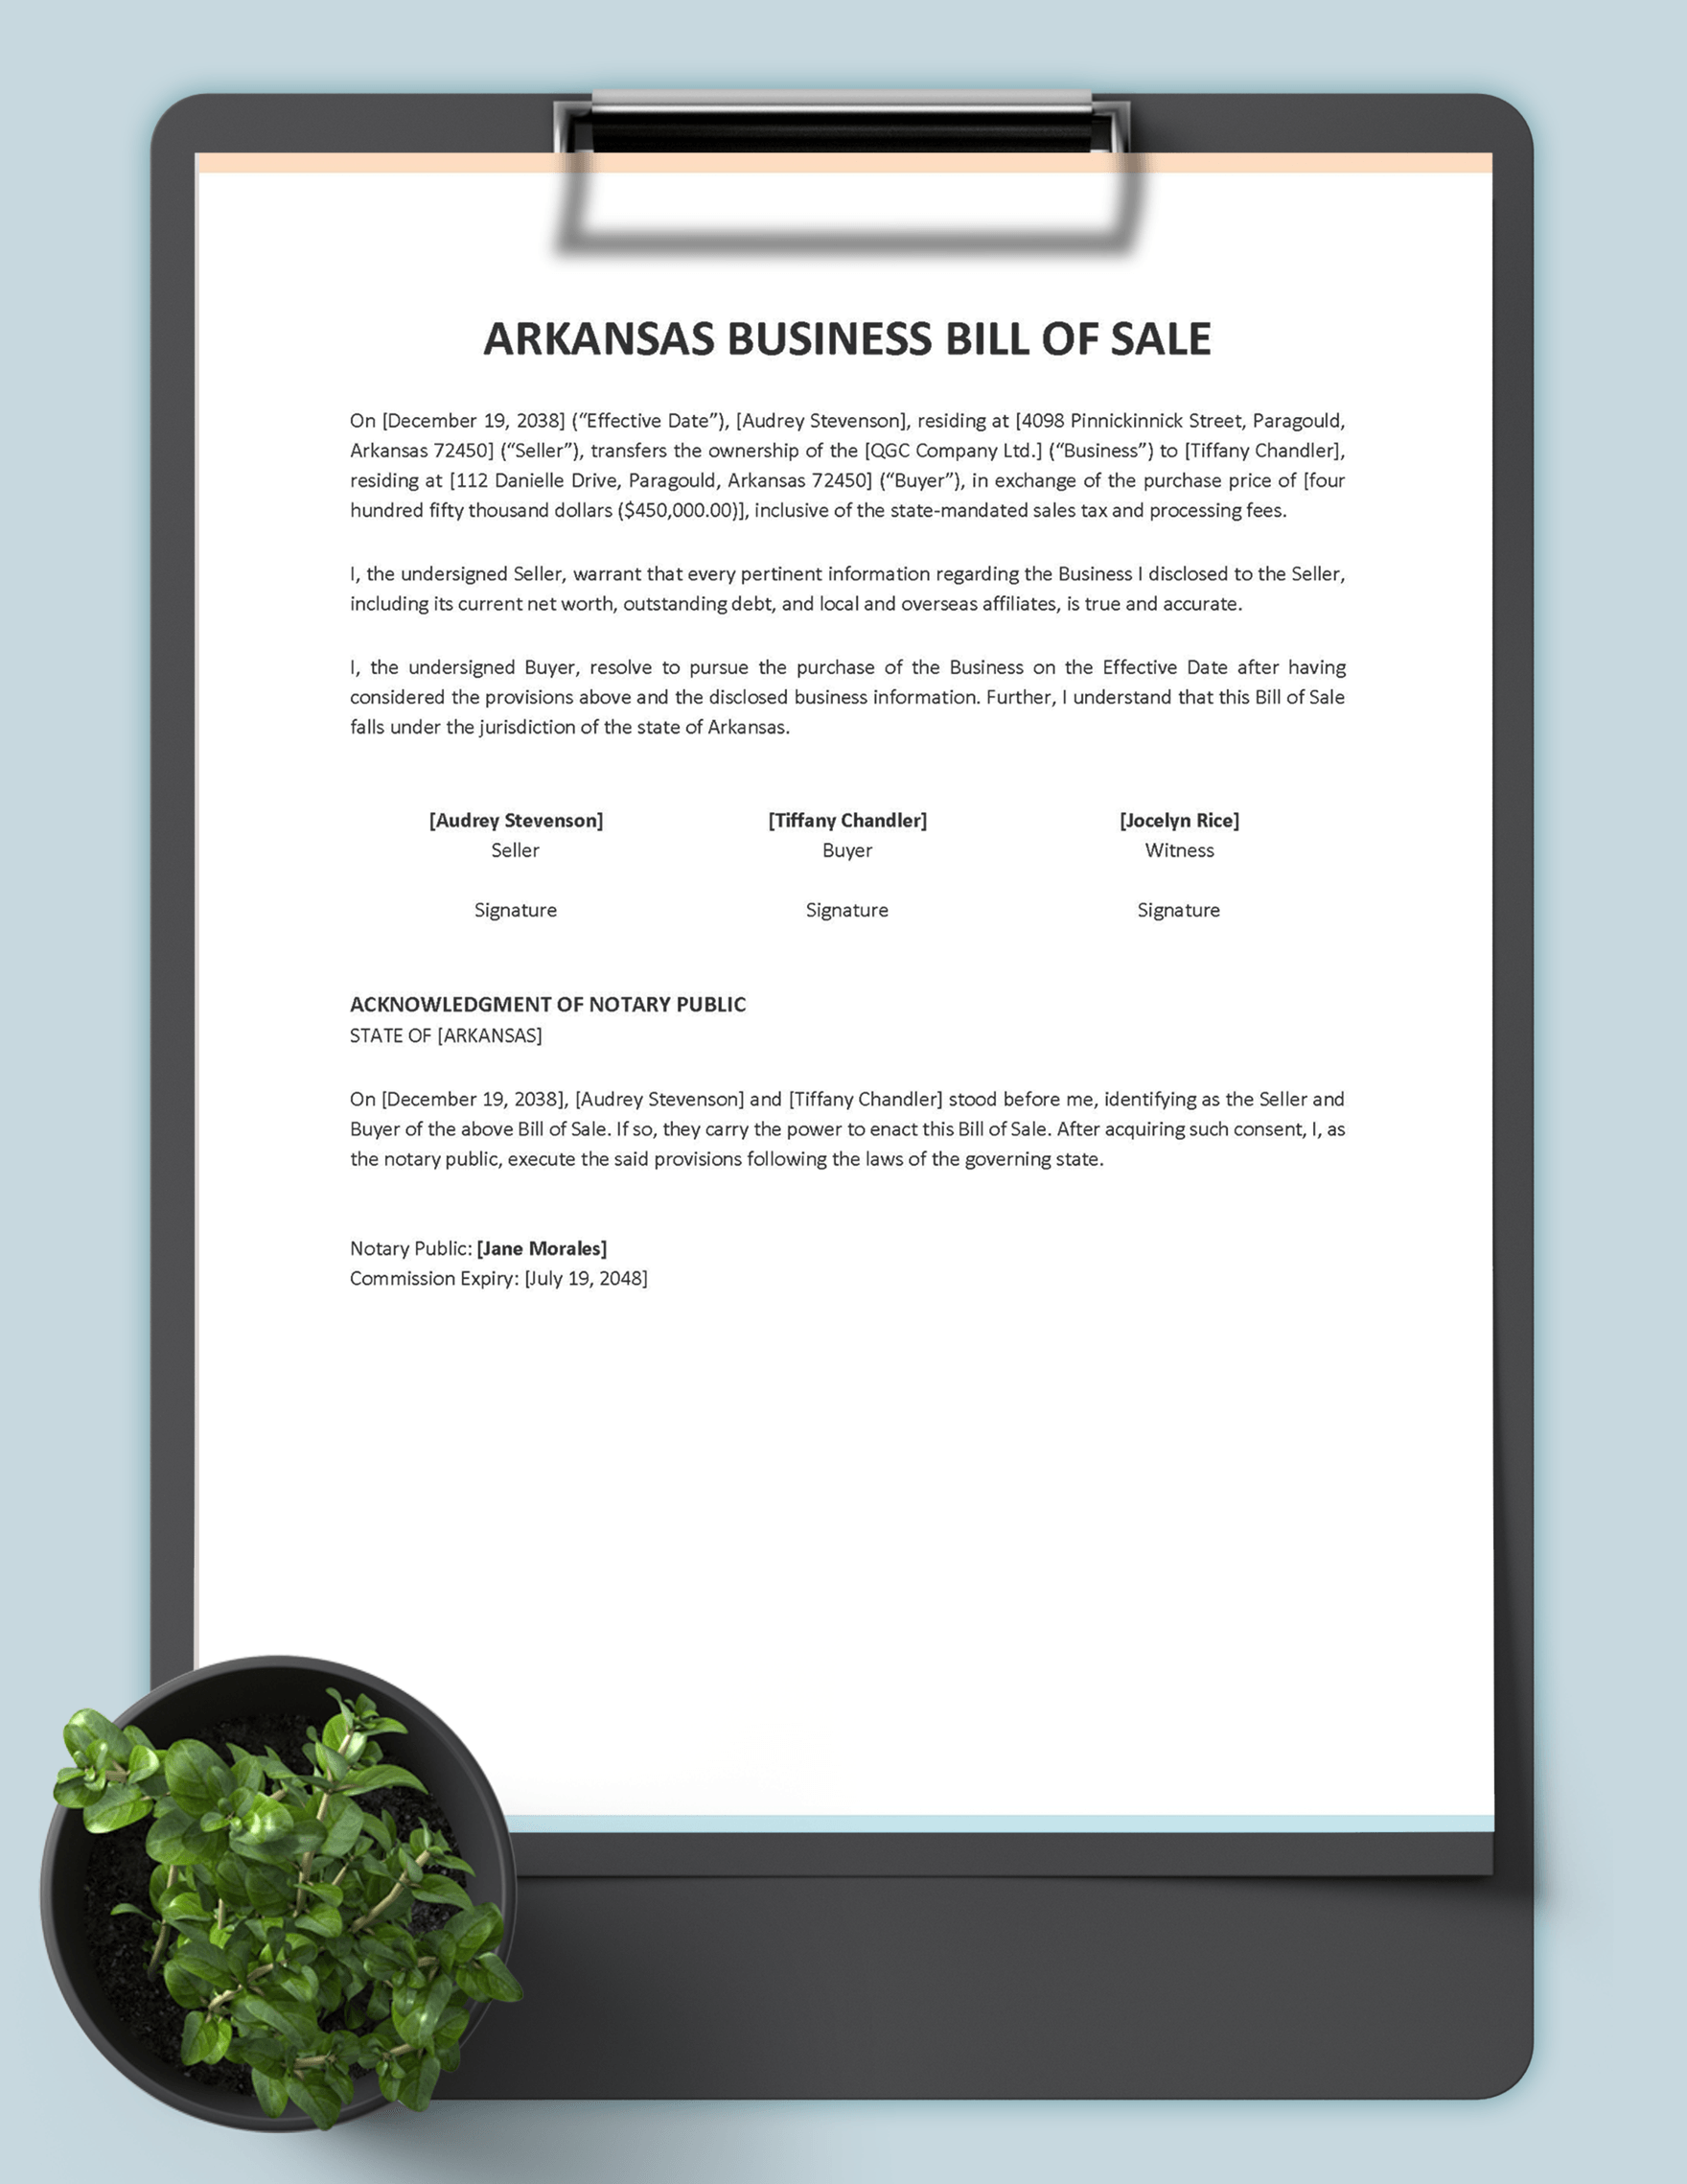 Arkansas Business Bill of Sale Template